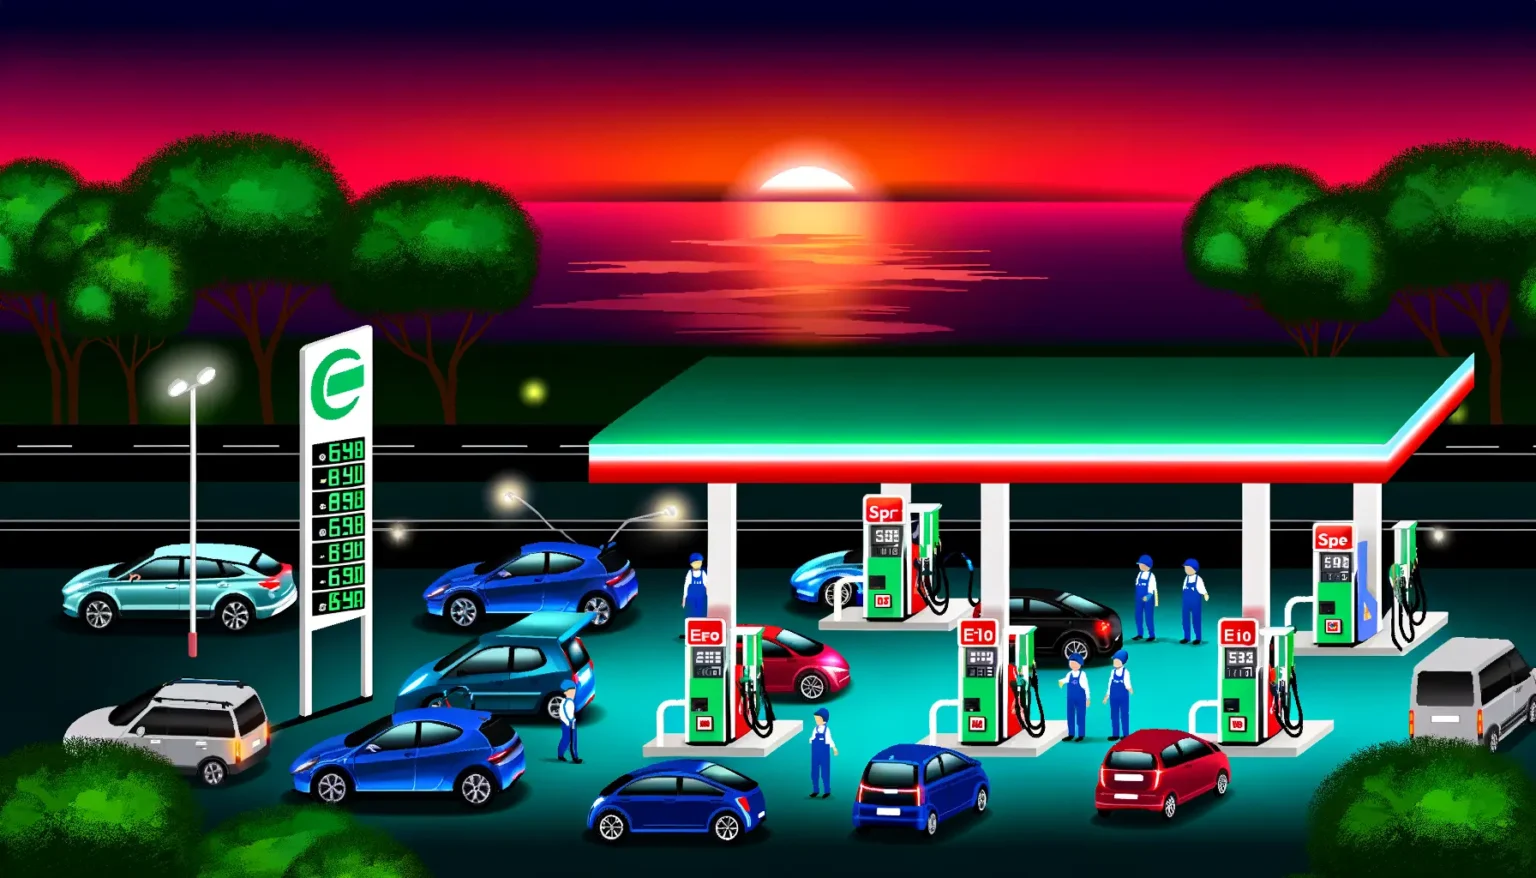 Eine illustrierte Szene einer Tankstelle bei Sonnenuntergang mit mehreren Autos, die betankt werden. Im Hintergrund geht die Sonne über dem Meer unter, und die Umgebung ist in rötlich-violette Töne getaucht. Preistafeln zeigen verschiedene Kraftstoffpreise an. Tankstellenmitarbeiter bedienen die Autos, während die Fahrer warten.